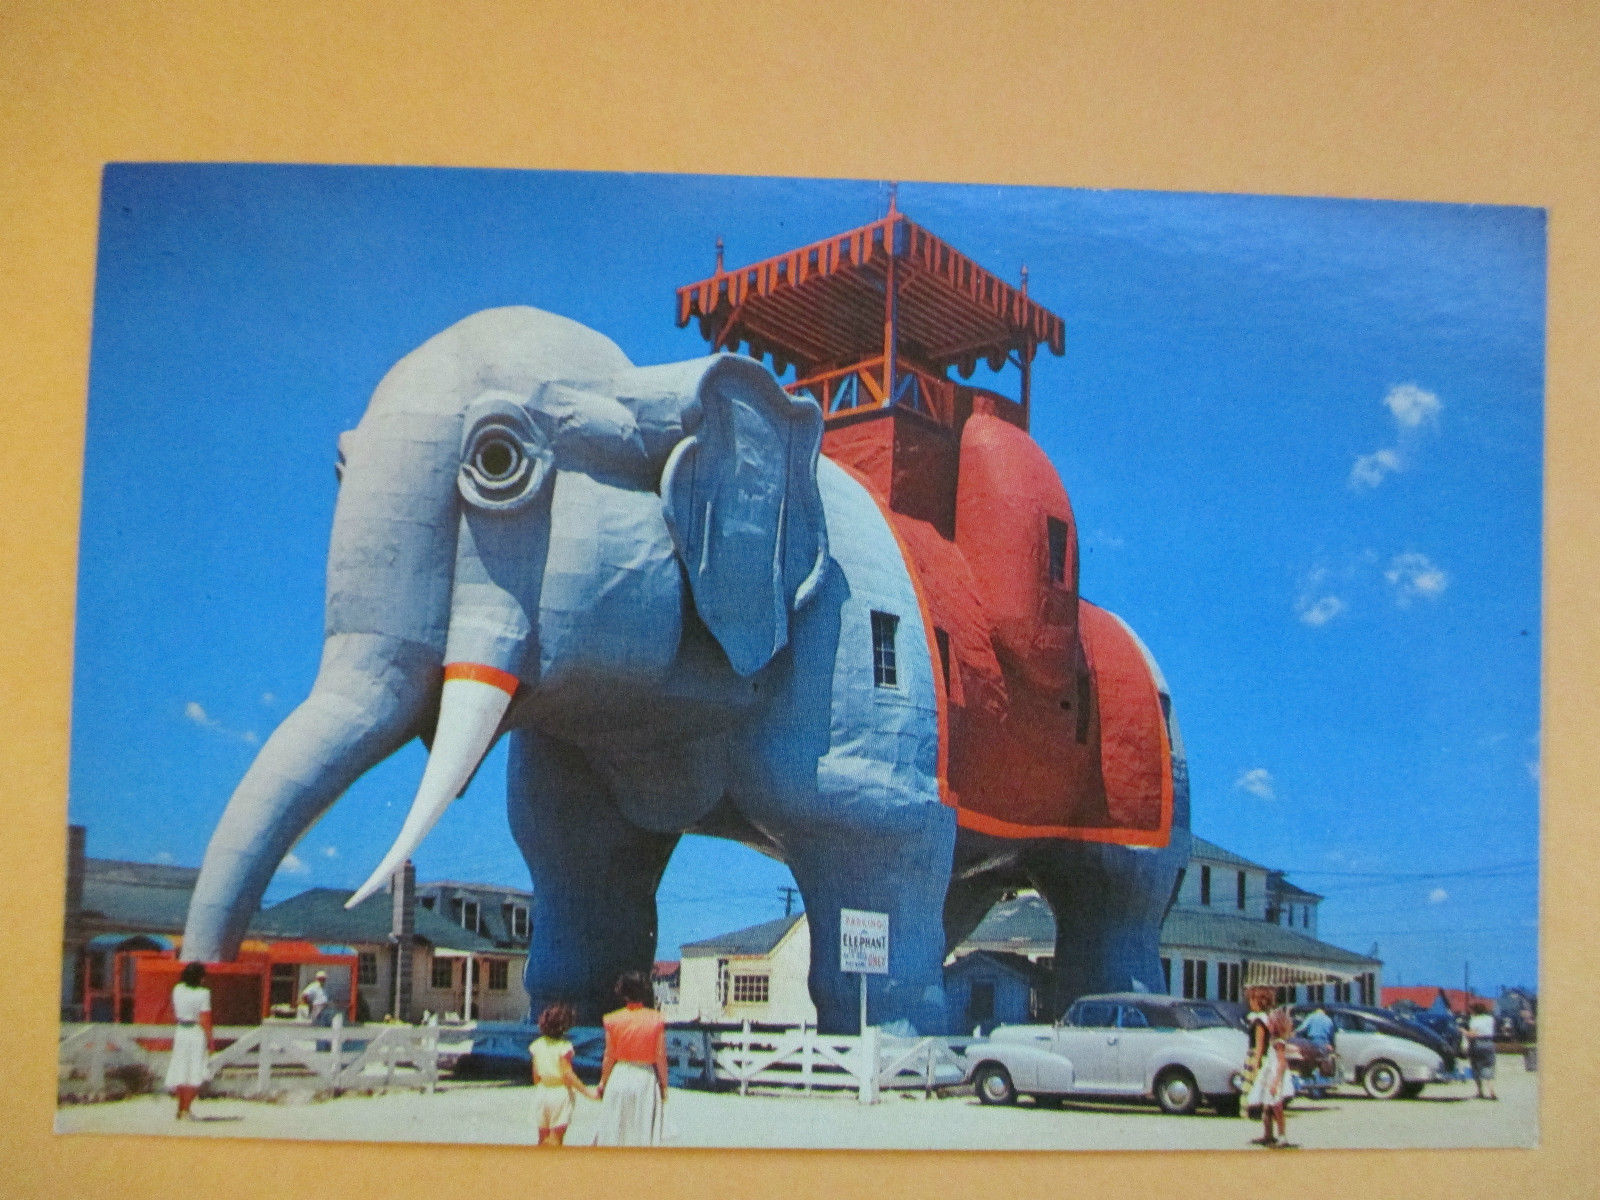 Atlantic City - Lucy the Elephant